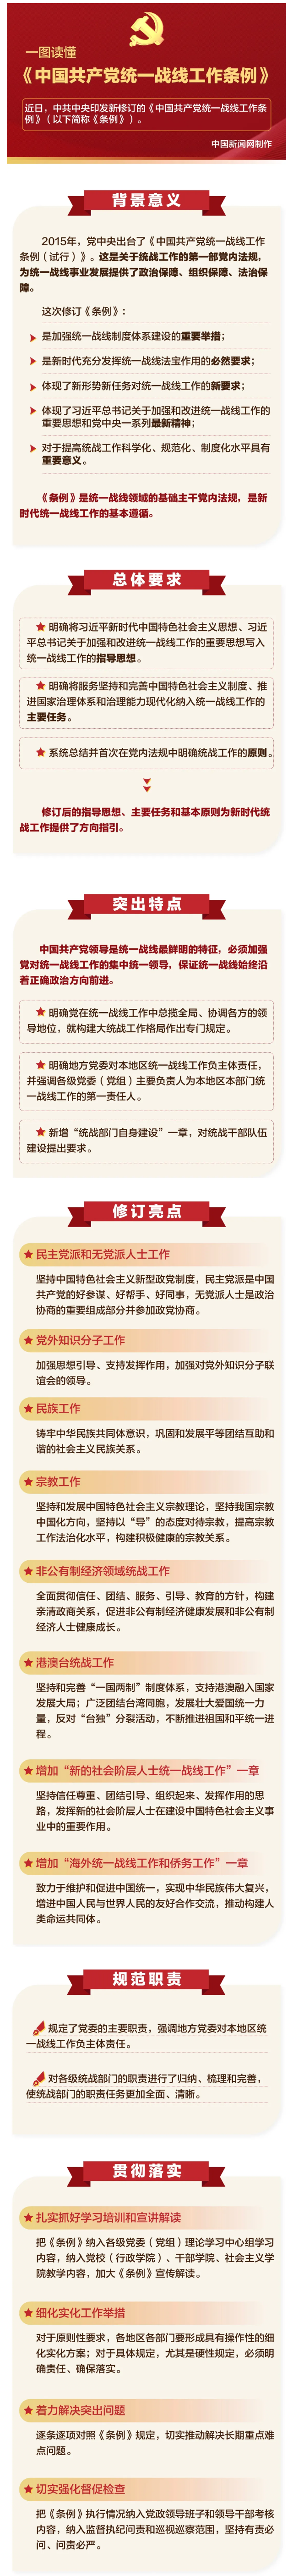 【速览】一图读懂《中国共产党统一战线工作条例》.png